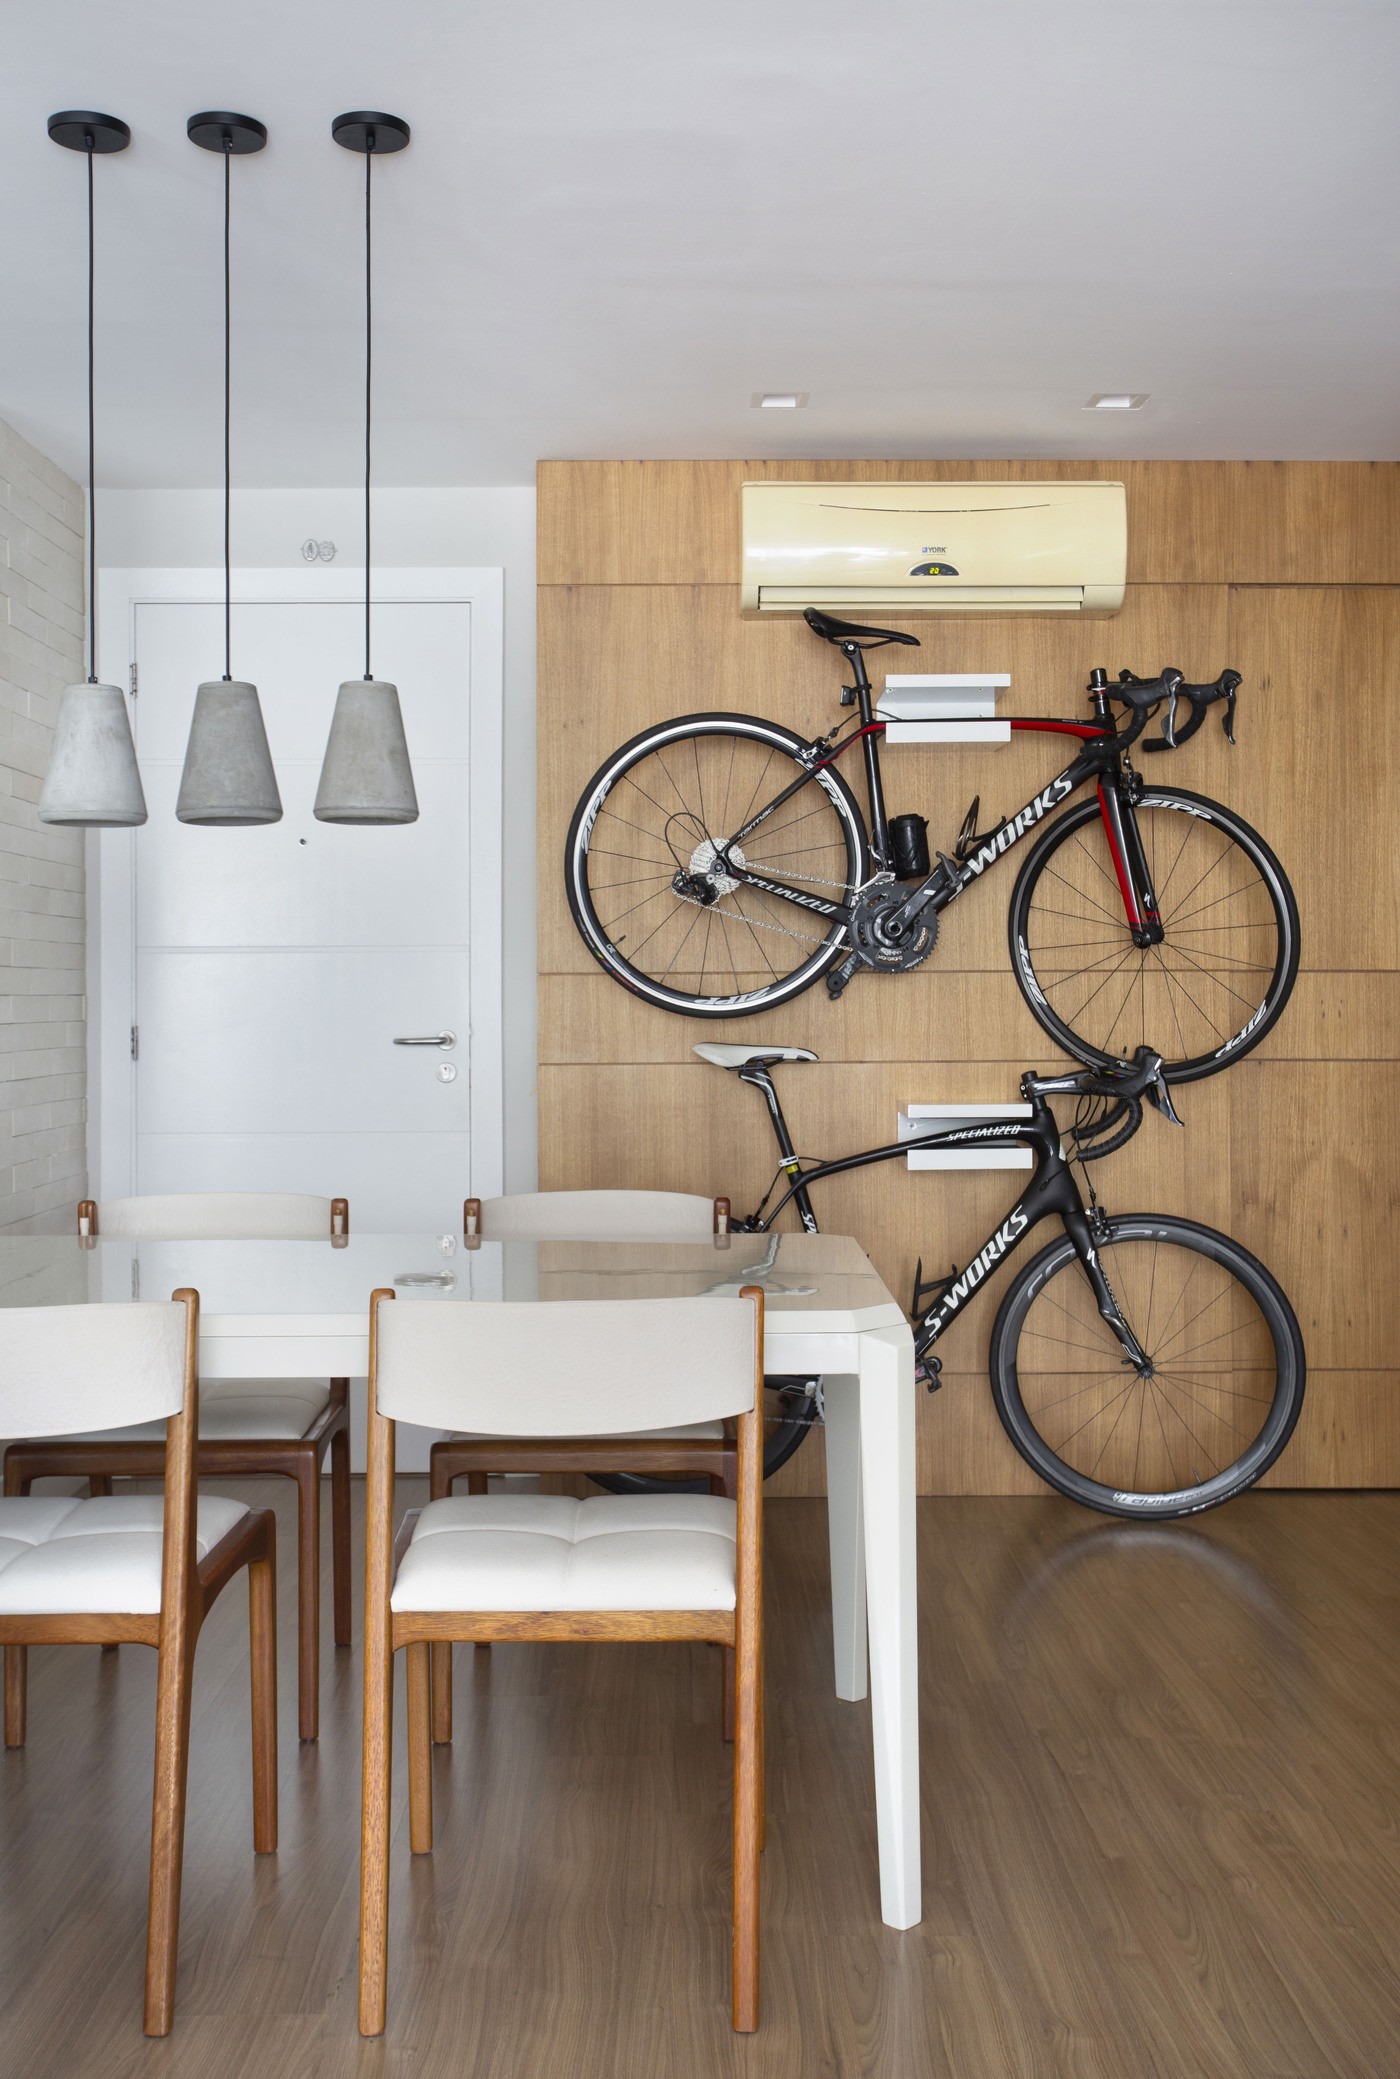 Décor do dia: sala de jantar com bicicletas na parede e pontos de cor (Foto: Denilson Machado/MCA Estúdio)